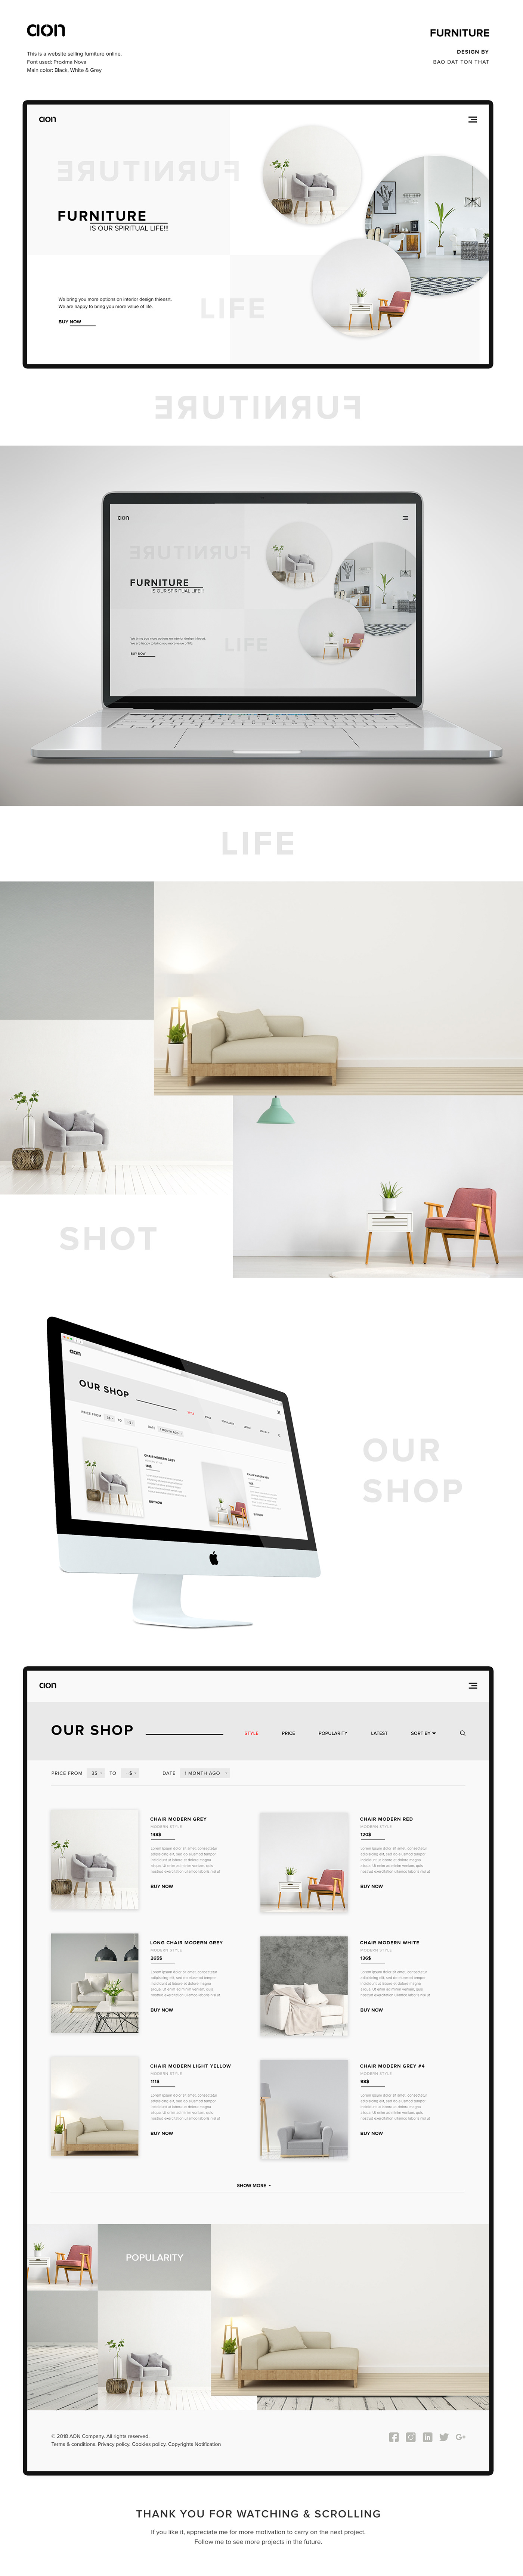 Web Design  Website Design web layout inspiration Fashion  UI/UX Design furniture brading UI/UX Designer  product design 